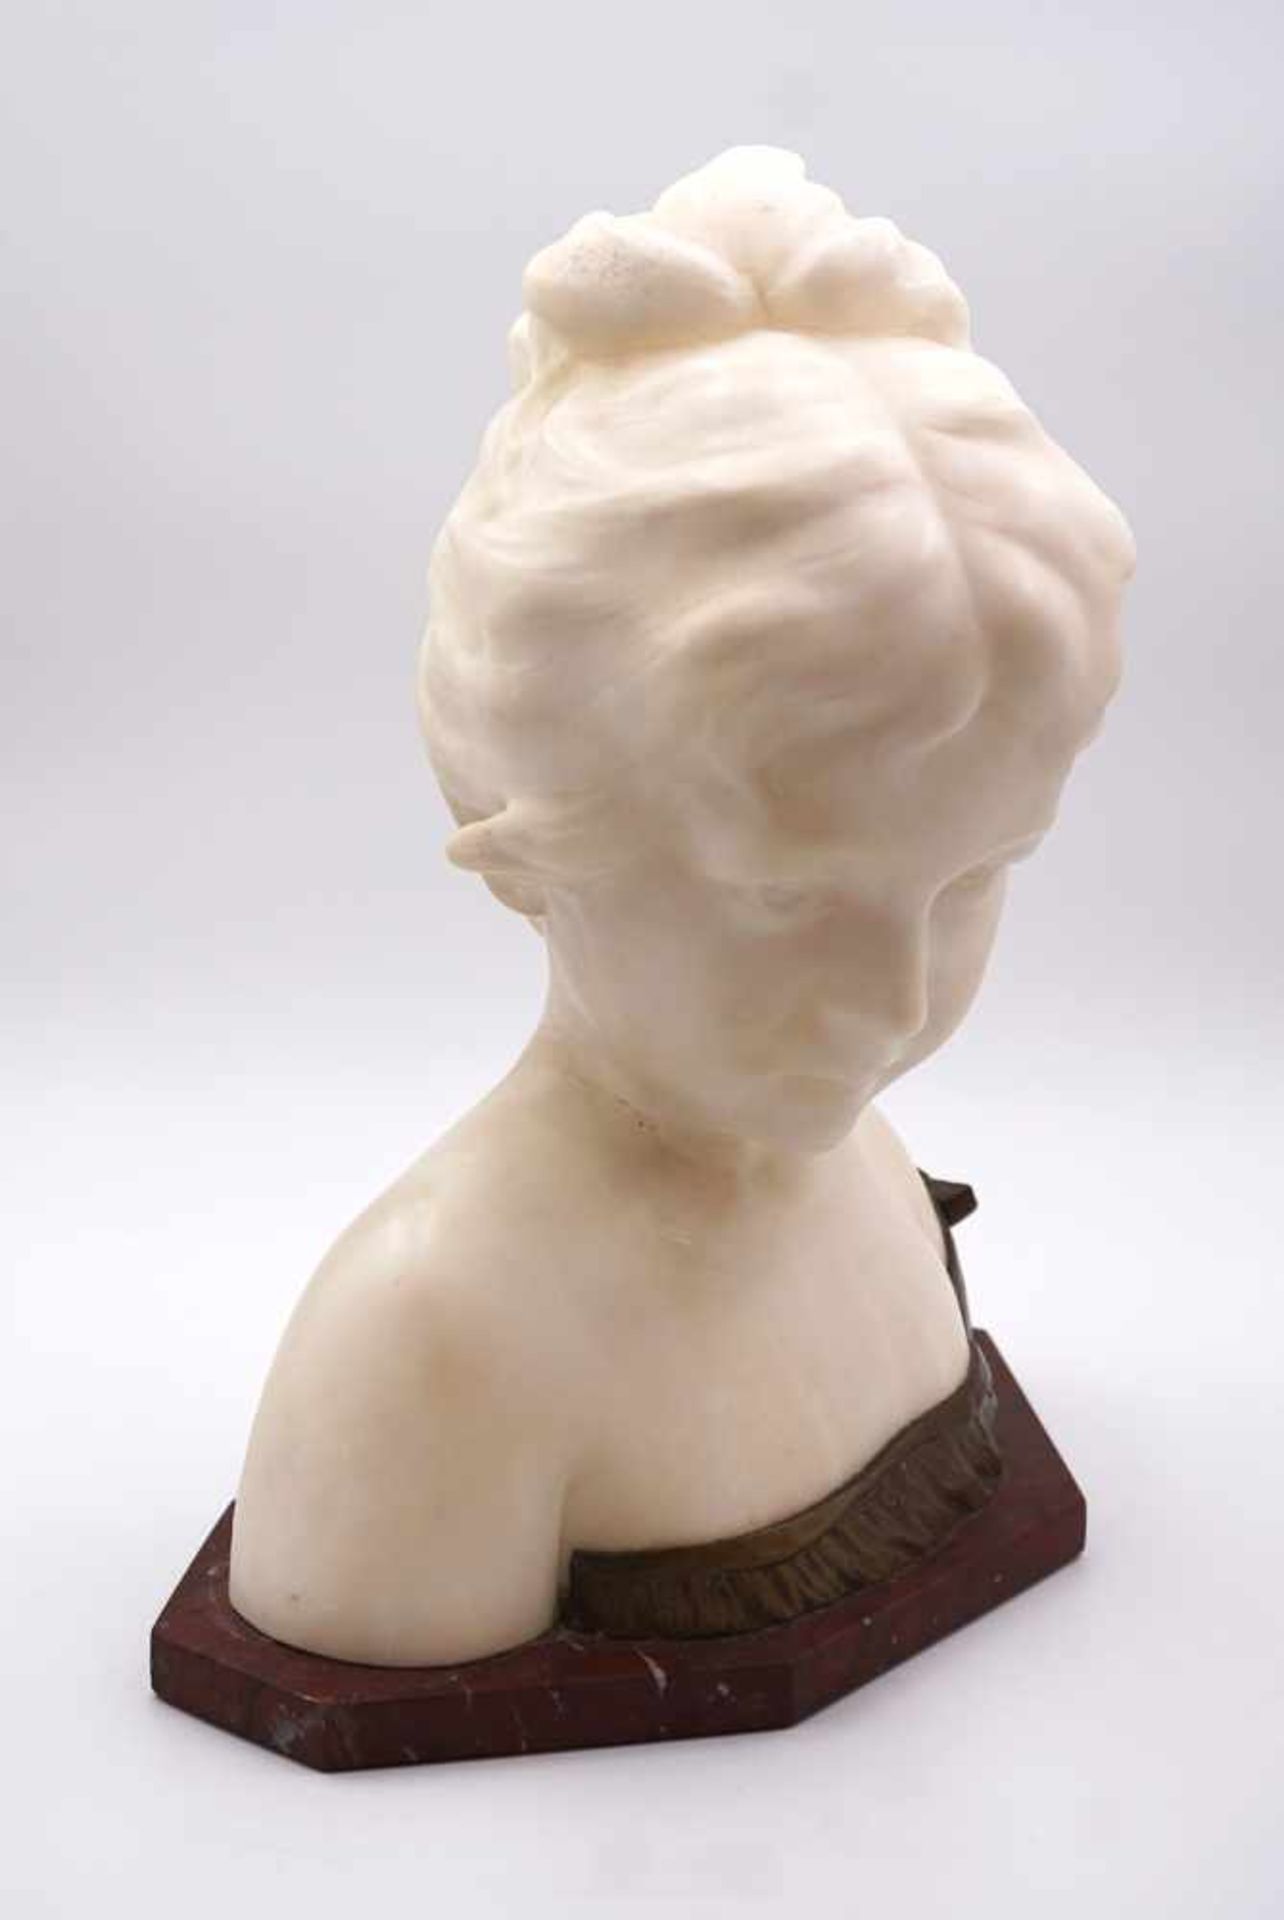 1 Skulptur wohl Alabaster "Mädchenbüste" wohl um 1900, signiert GINO - Bild 2 aus 3